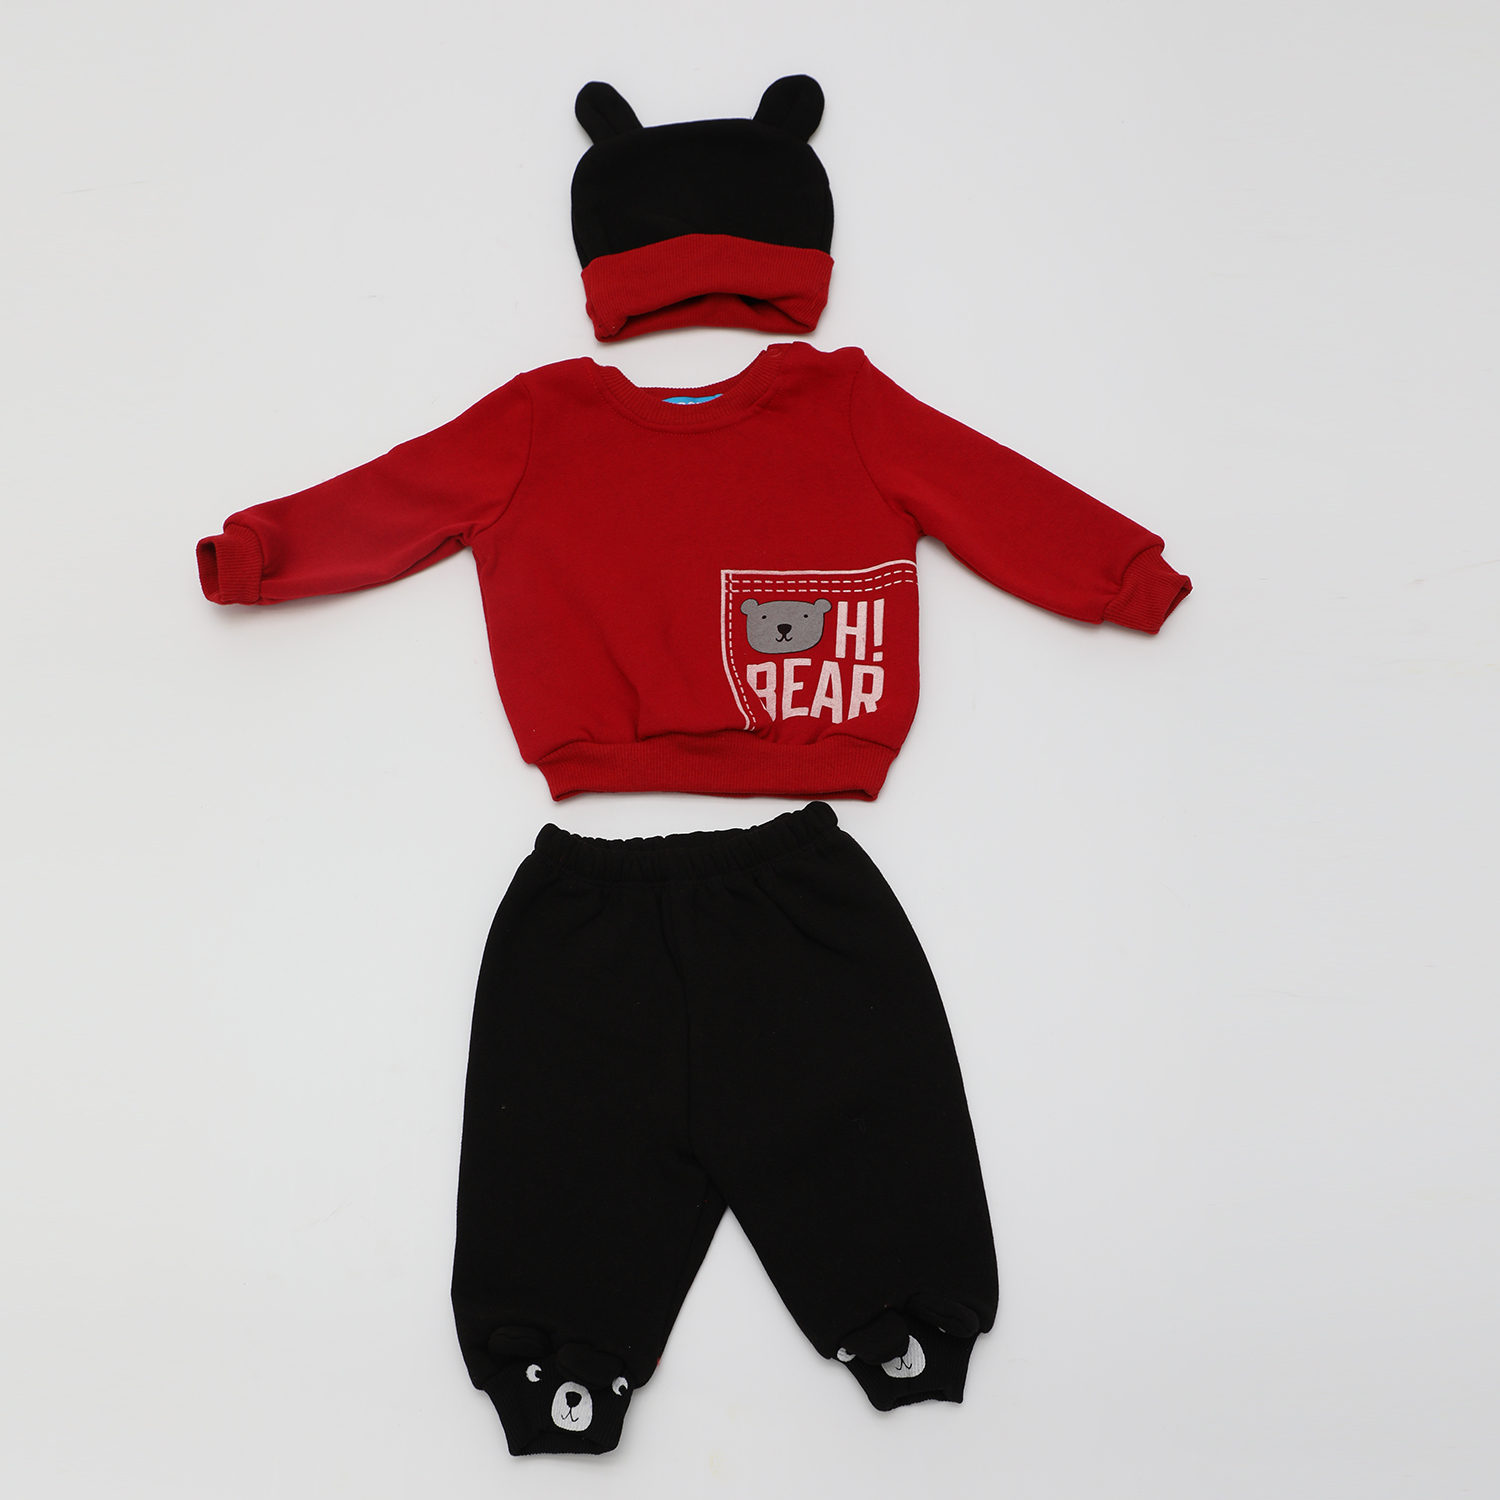 Παιδικά/Baby/Ρούχα/Σετ SAM 0-13 - Βρεφικό σετ φόρμας με σκουφάκι SAM 0-13 HI BEAR κόκκινο μαύρο